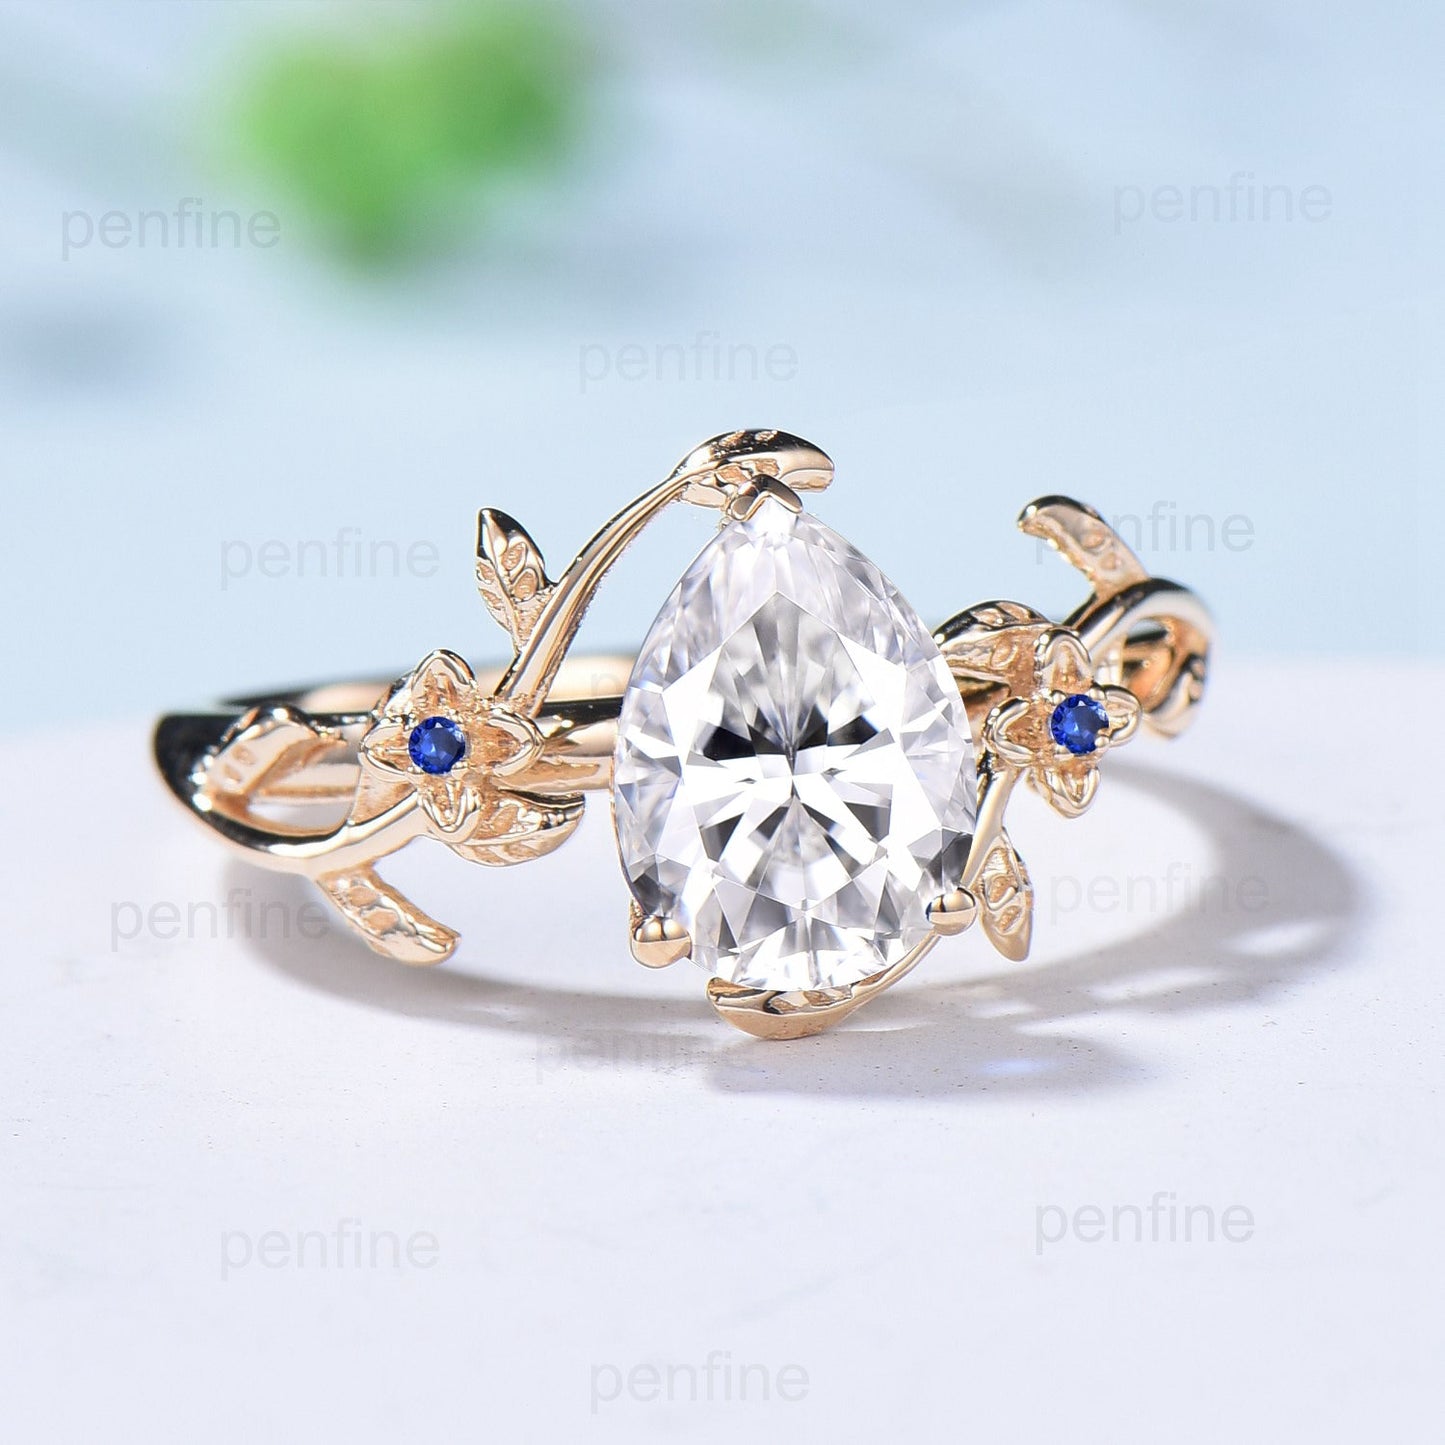 Art Deco Diamond Engagement Ring VVS-D Pear Shaped Nature Inspired Lab Grown Diamond IGI Certificate Elegant Moissanite Flower Wedding Ring - PENFINE